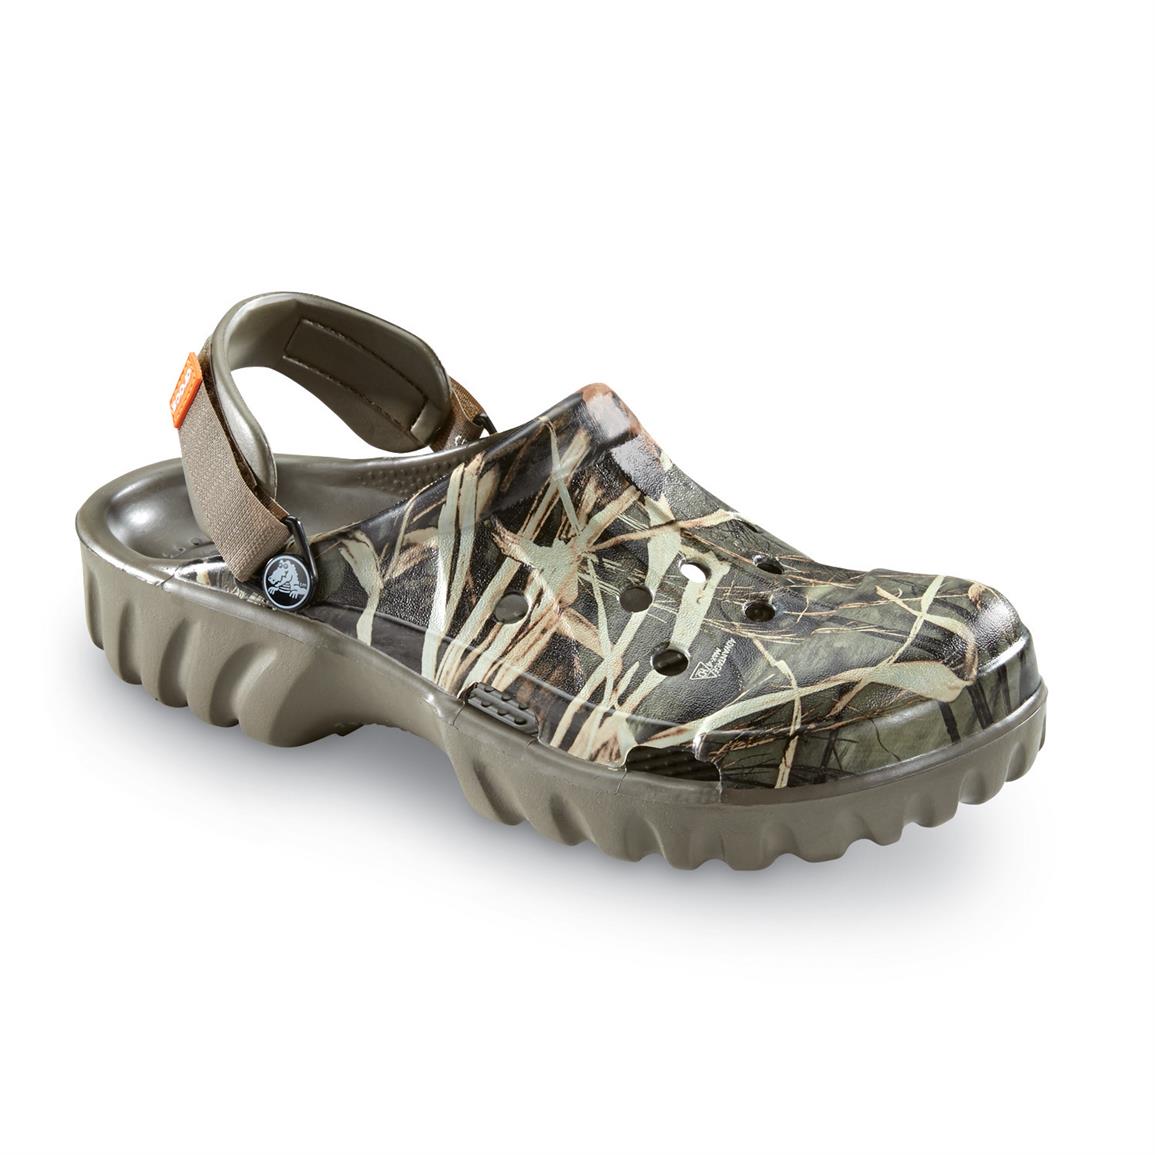 Crocs Men's Off Road Clogs, Realtree - 620898, Casual Shoes at ...